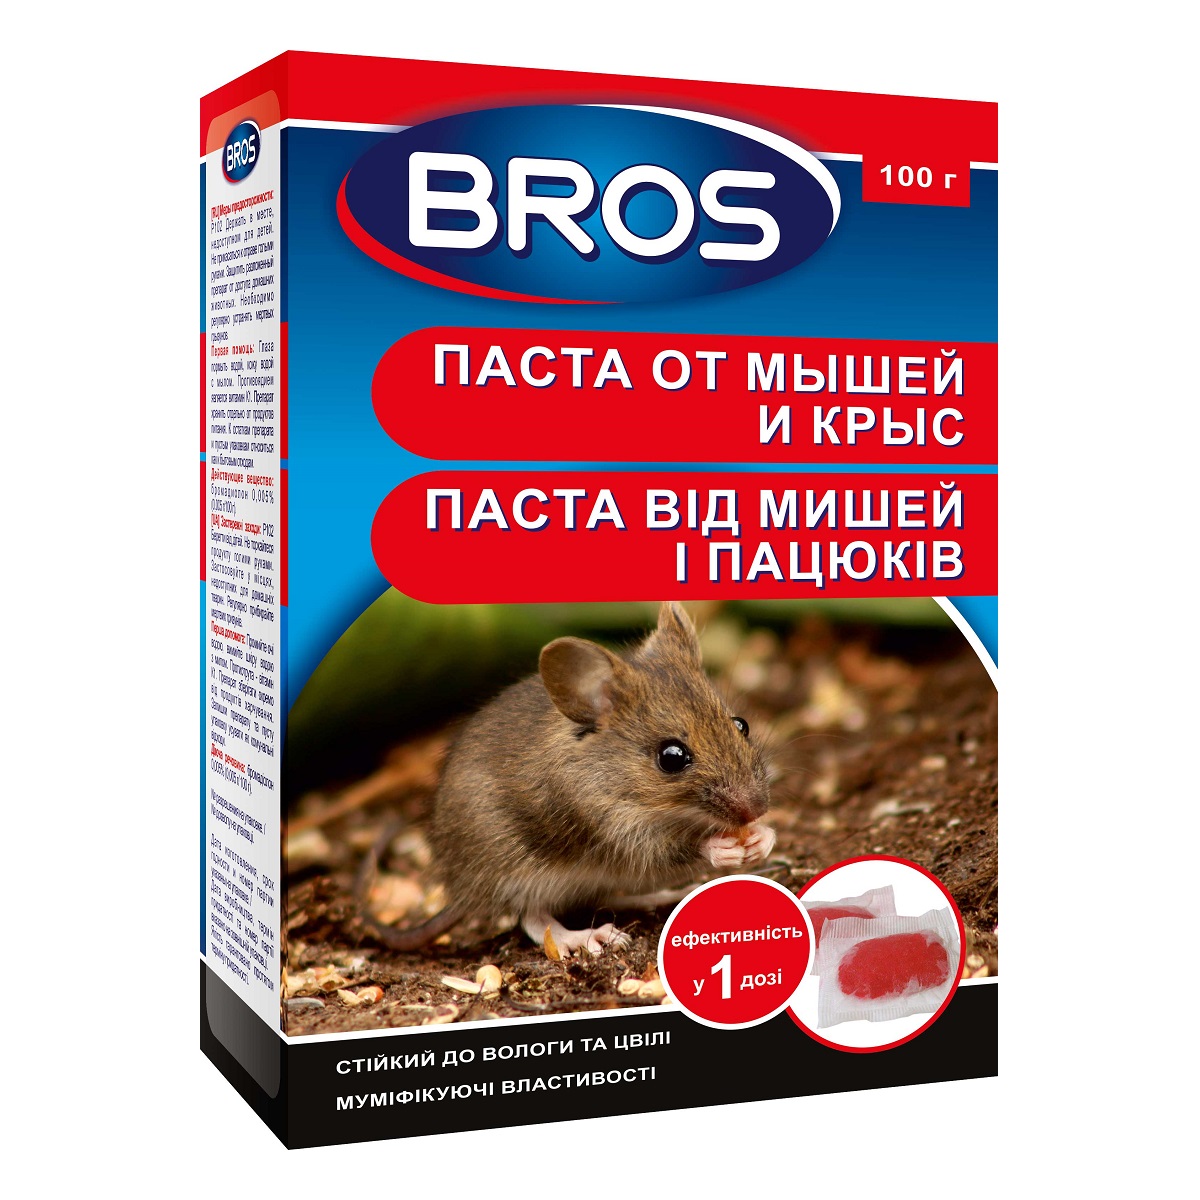 Паста від мишей та пацюків Bros 100 г / Брос